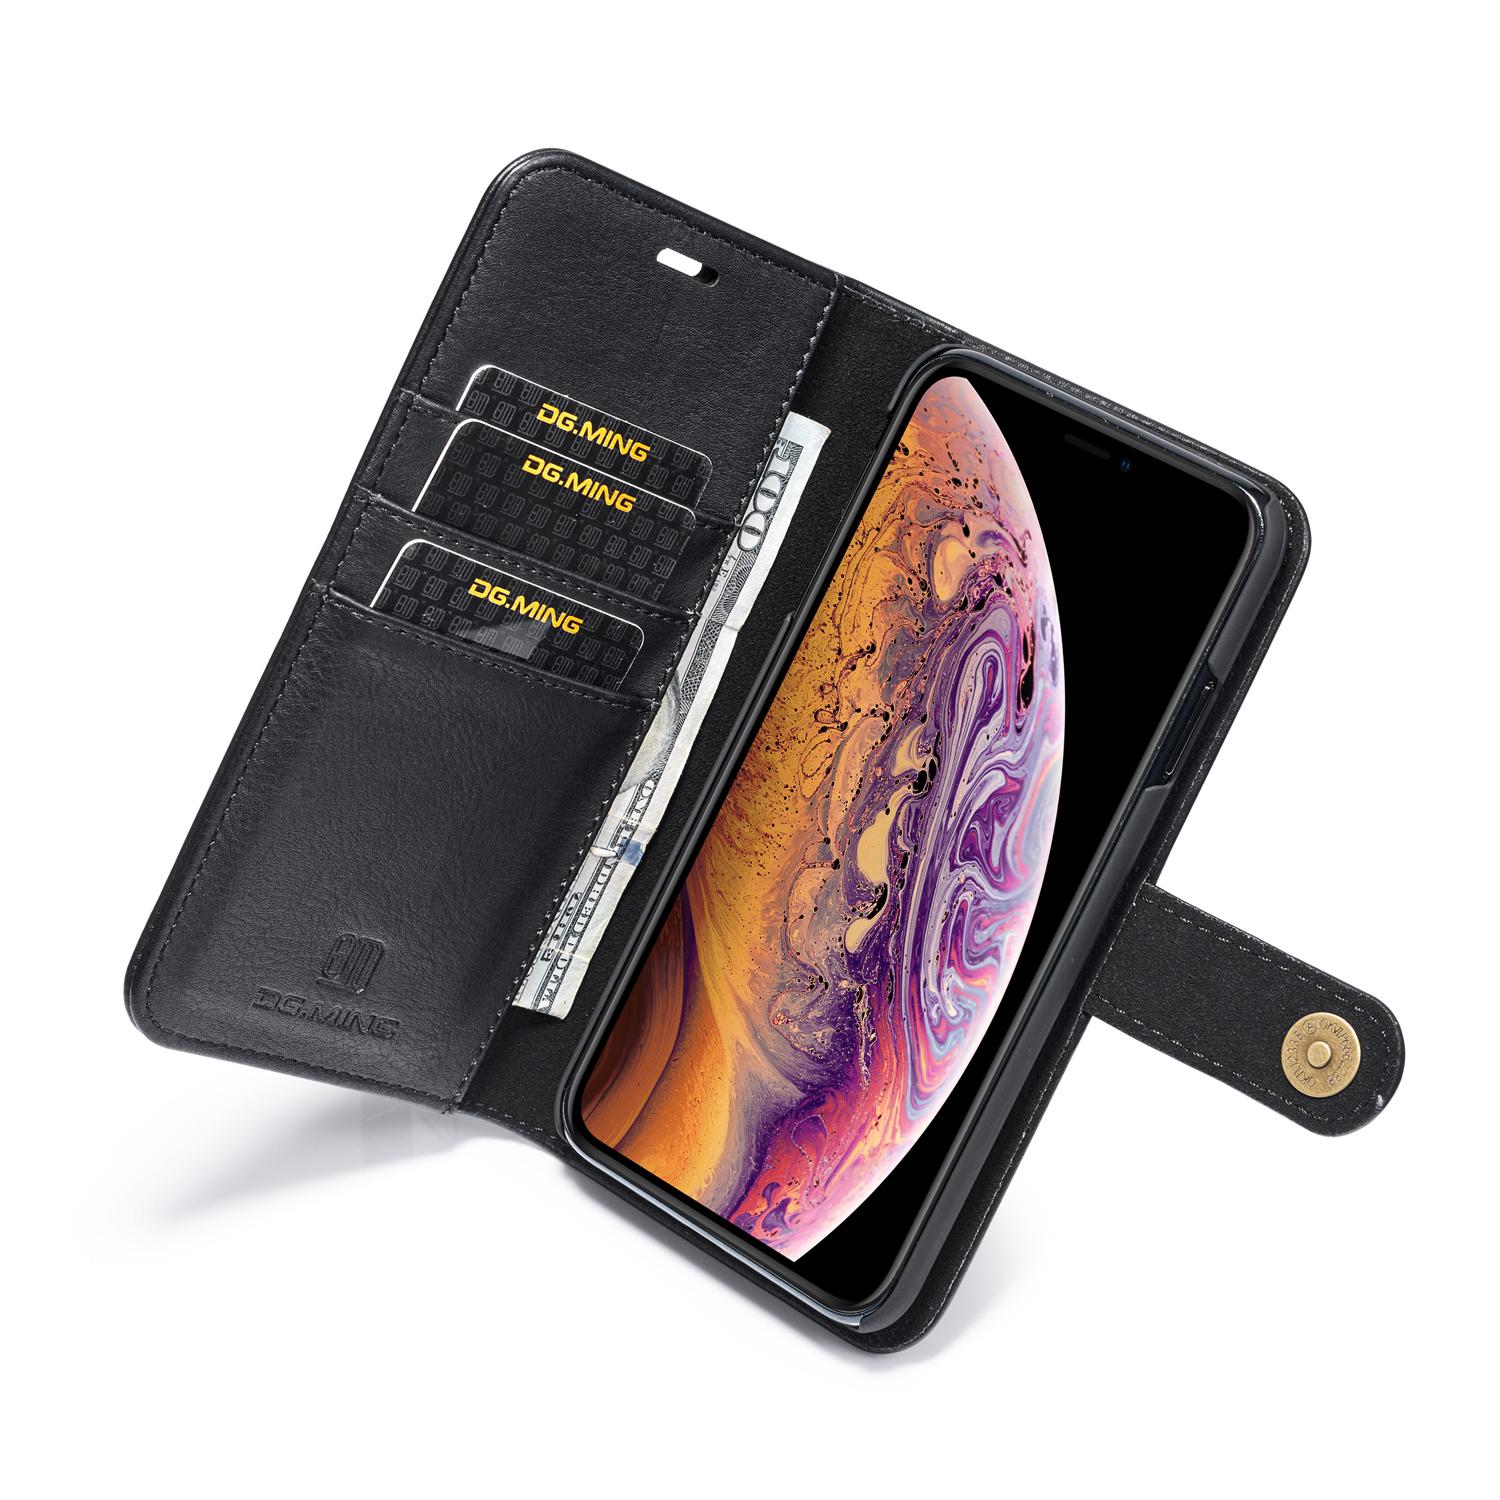 iPhone XS Max Plånboksfodral med avtagbart skal, svart